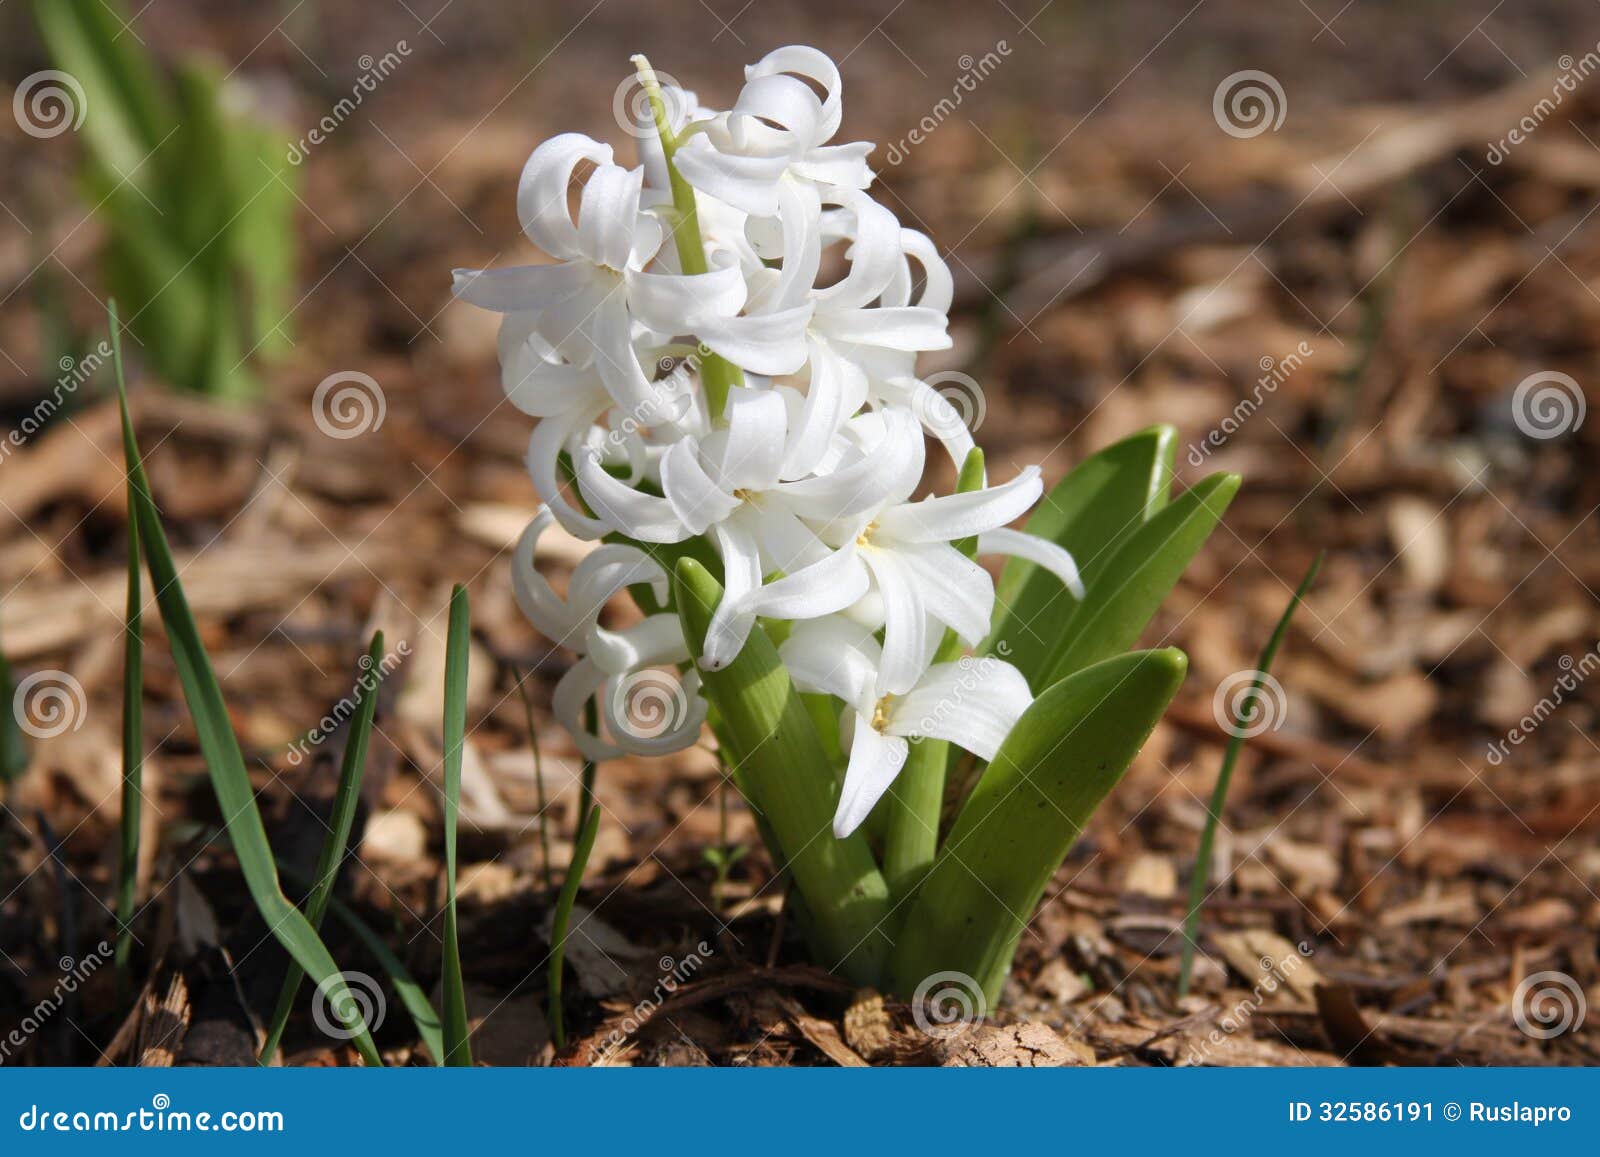 Flor branca do jacinto imagem de stock. Imagem de verde - 32586191